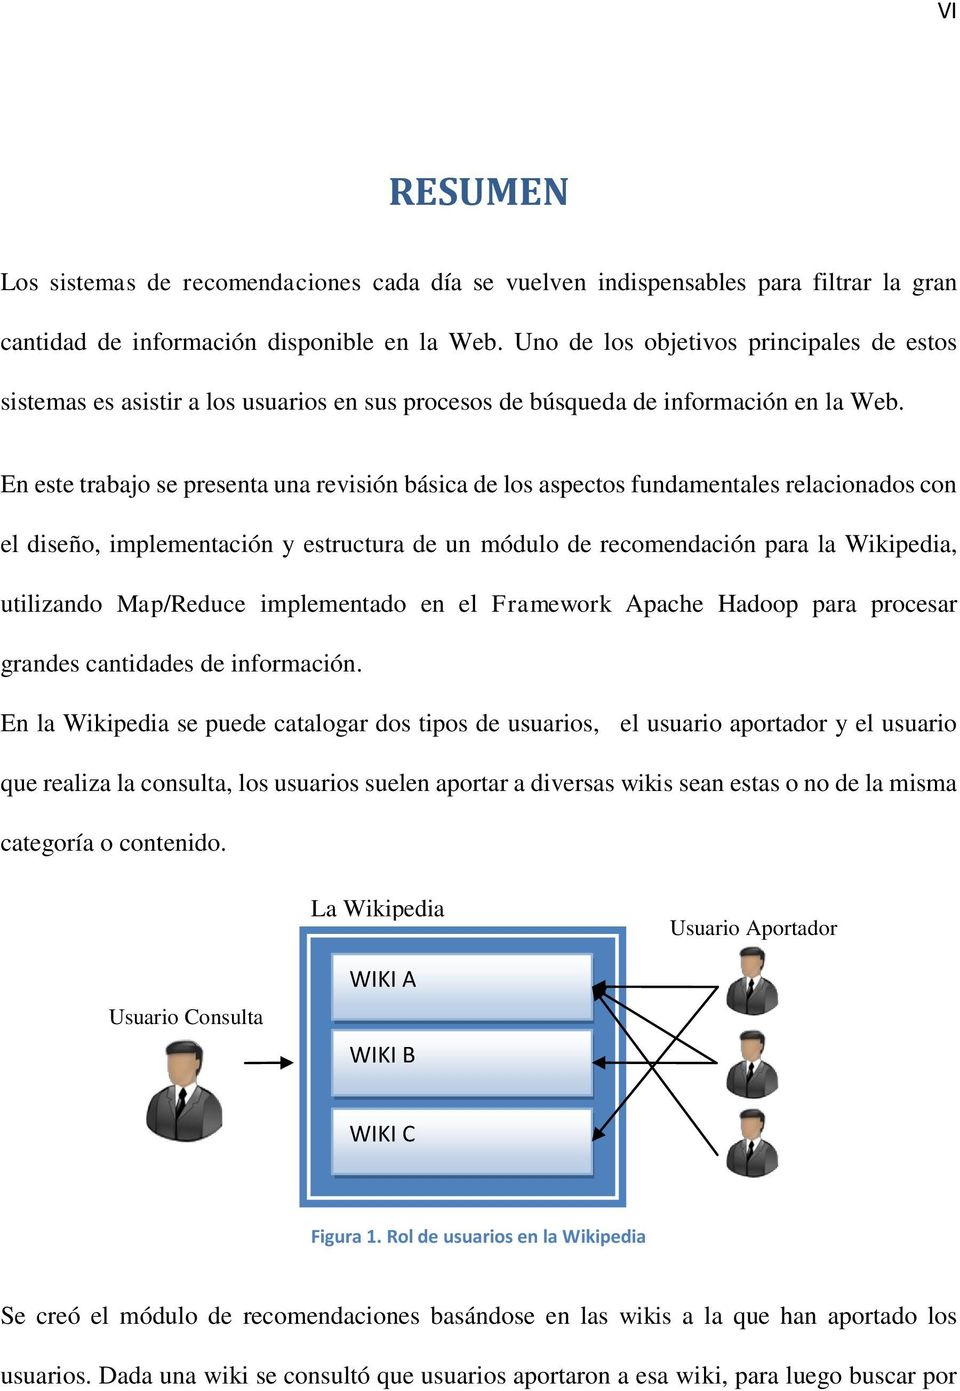 En este trabajo se presenta una revisión básica de los aspectos fundamentales relacionados con el diseño, implementación y estructura de un módulo de recomendación para la Wikipedia, utilizando